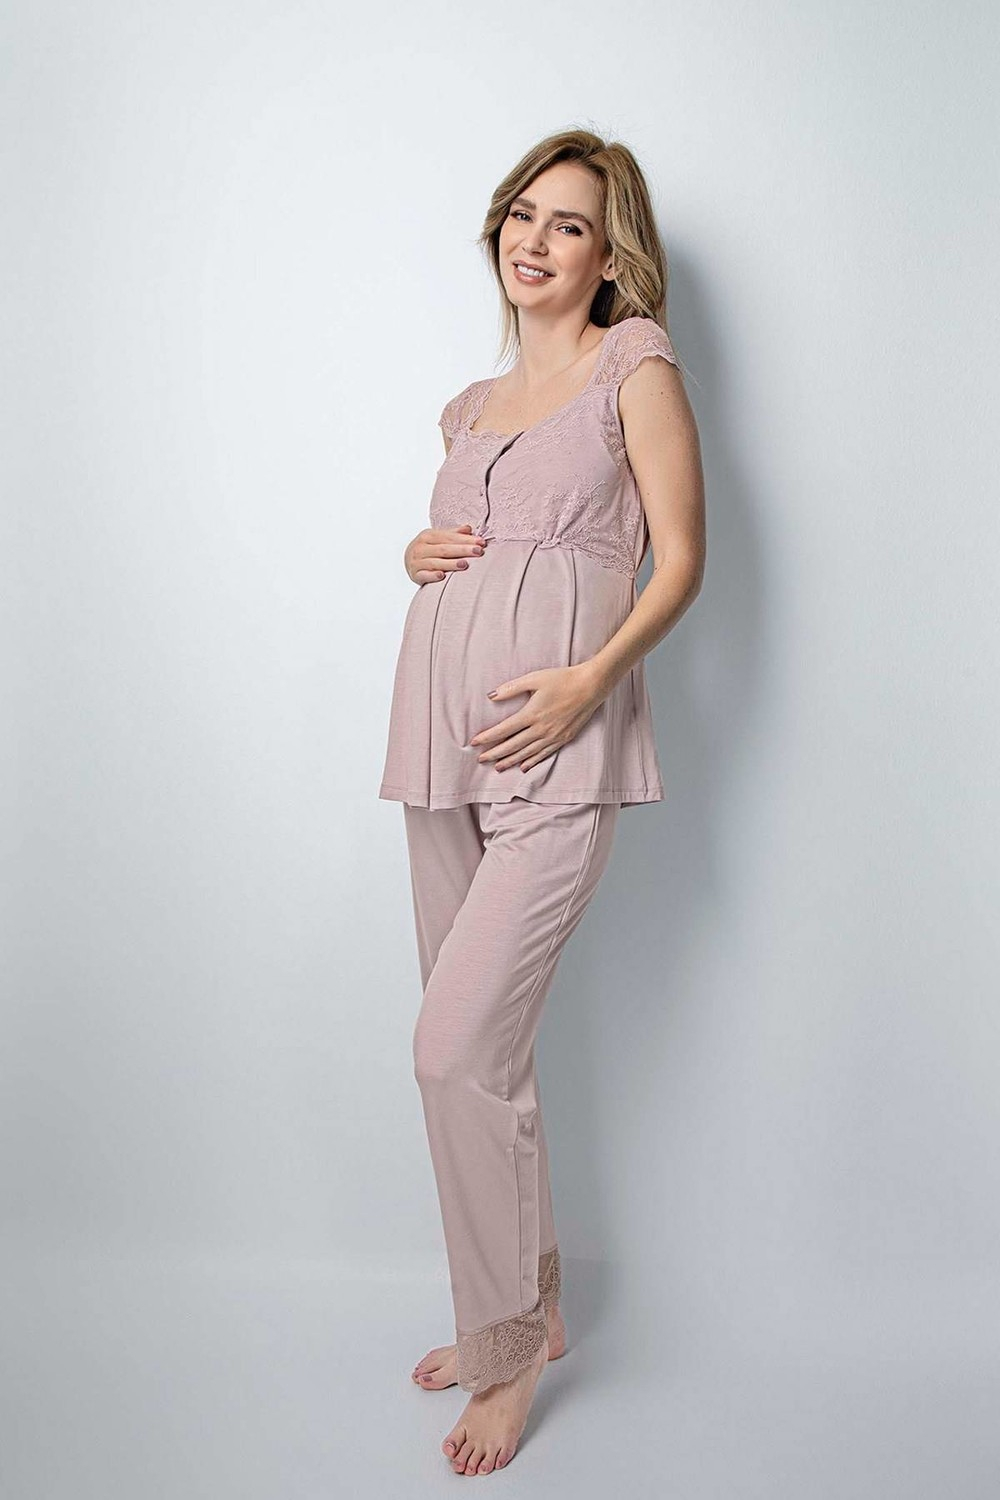 Ночная пижама Monamise 18441 для беременных и послеродового периода - меховая